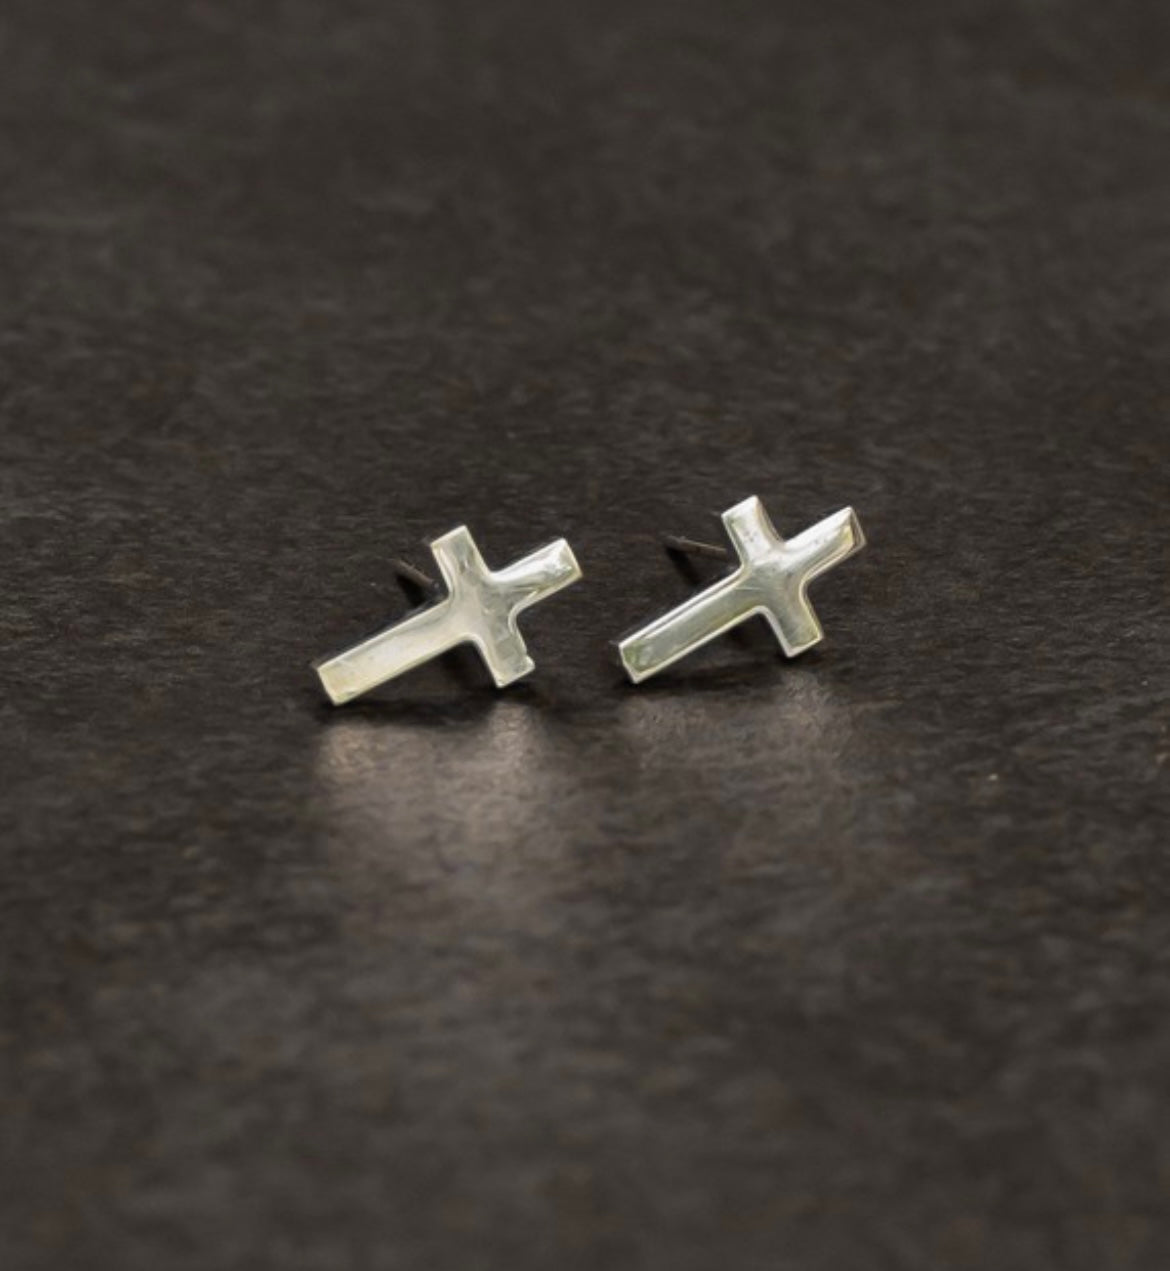 Silver cross earrings